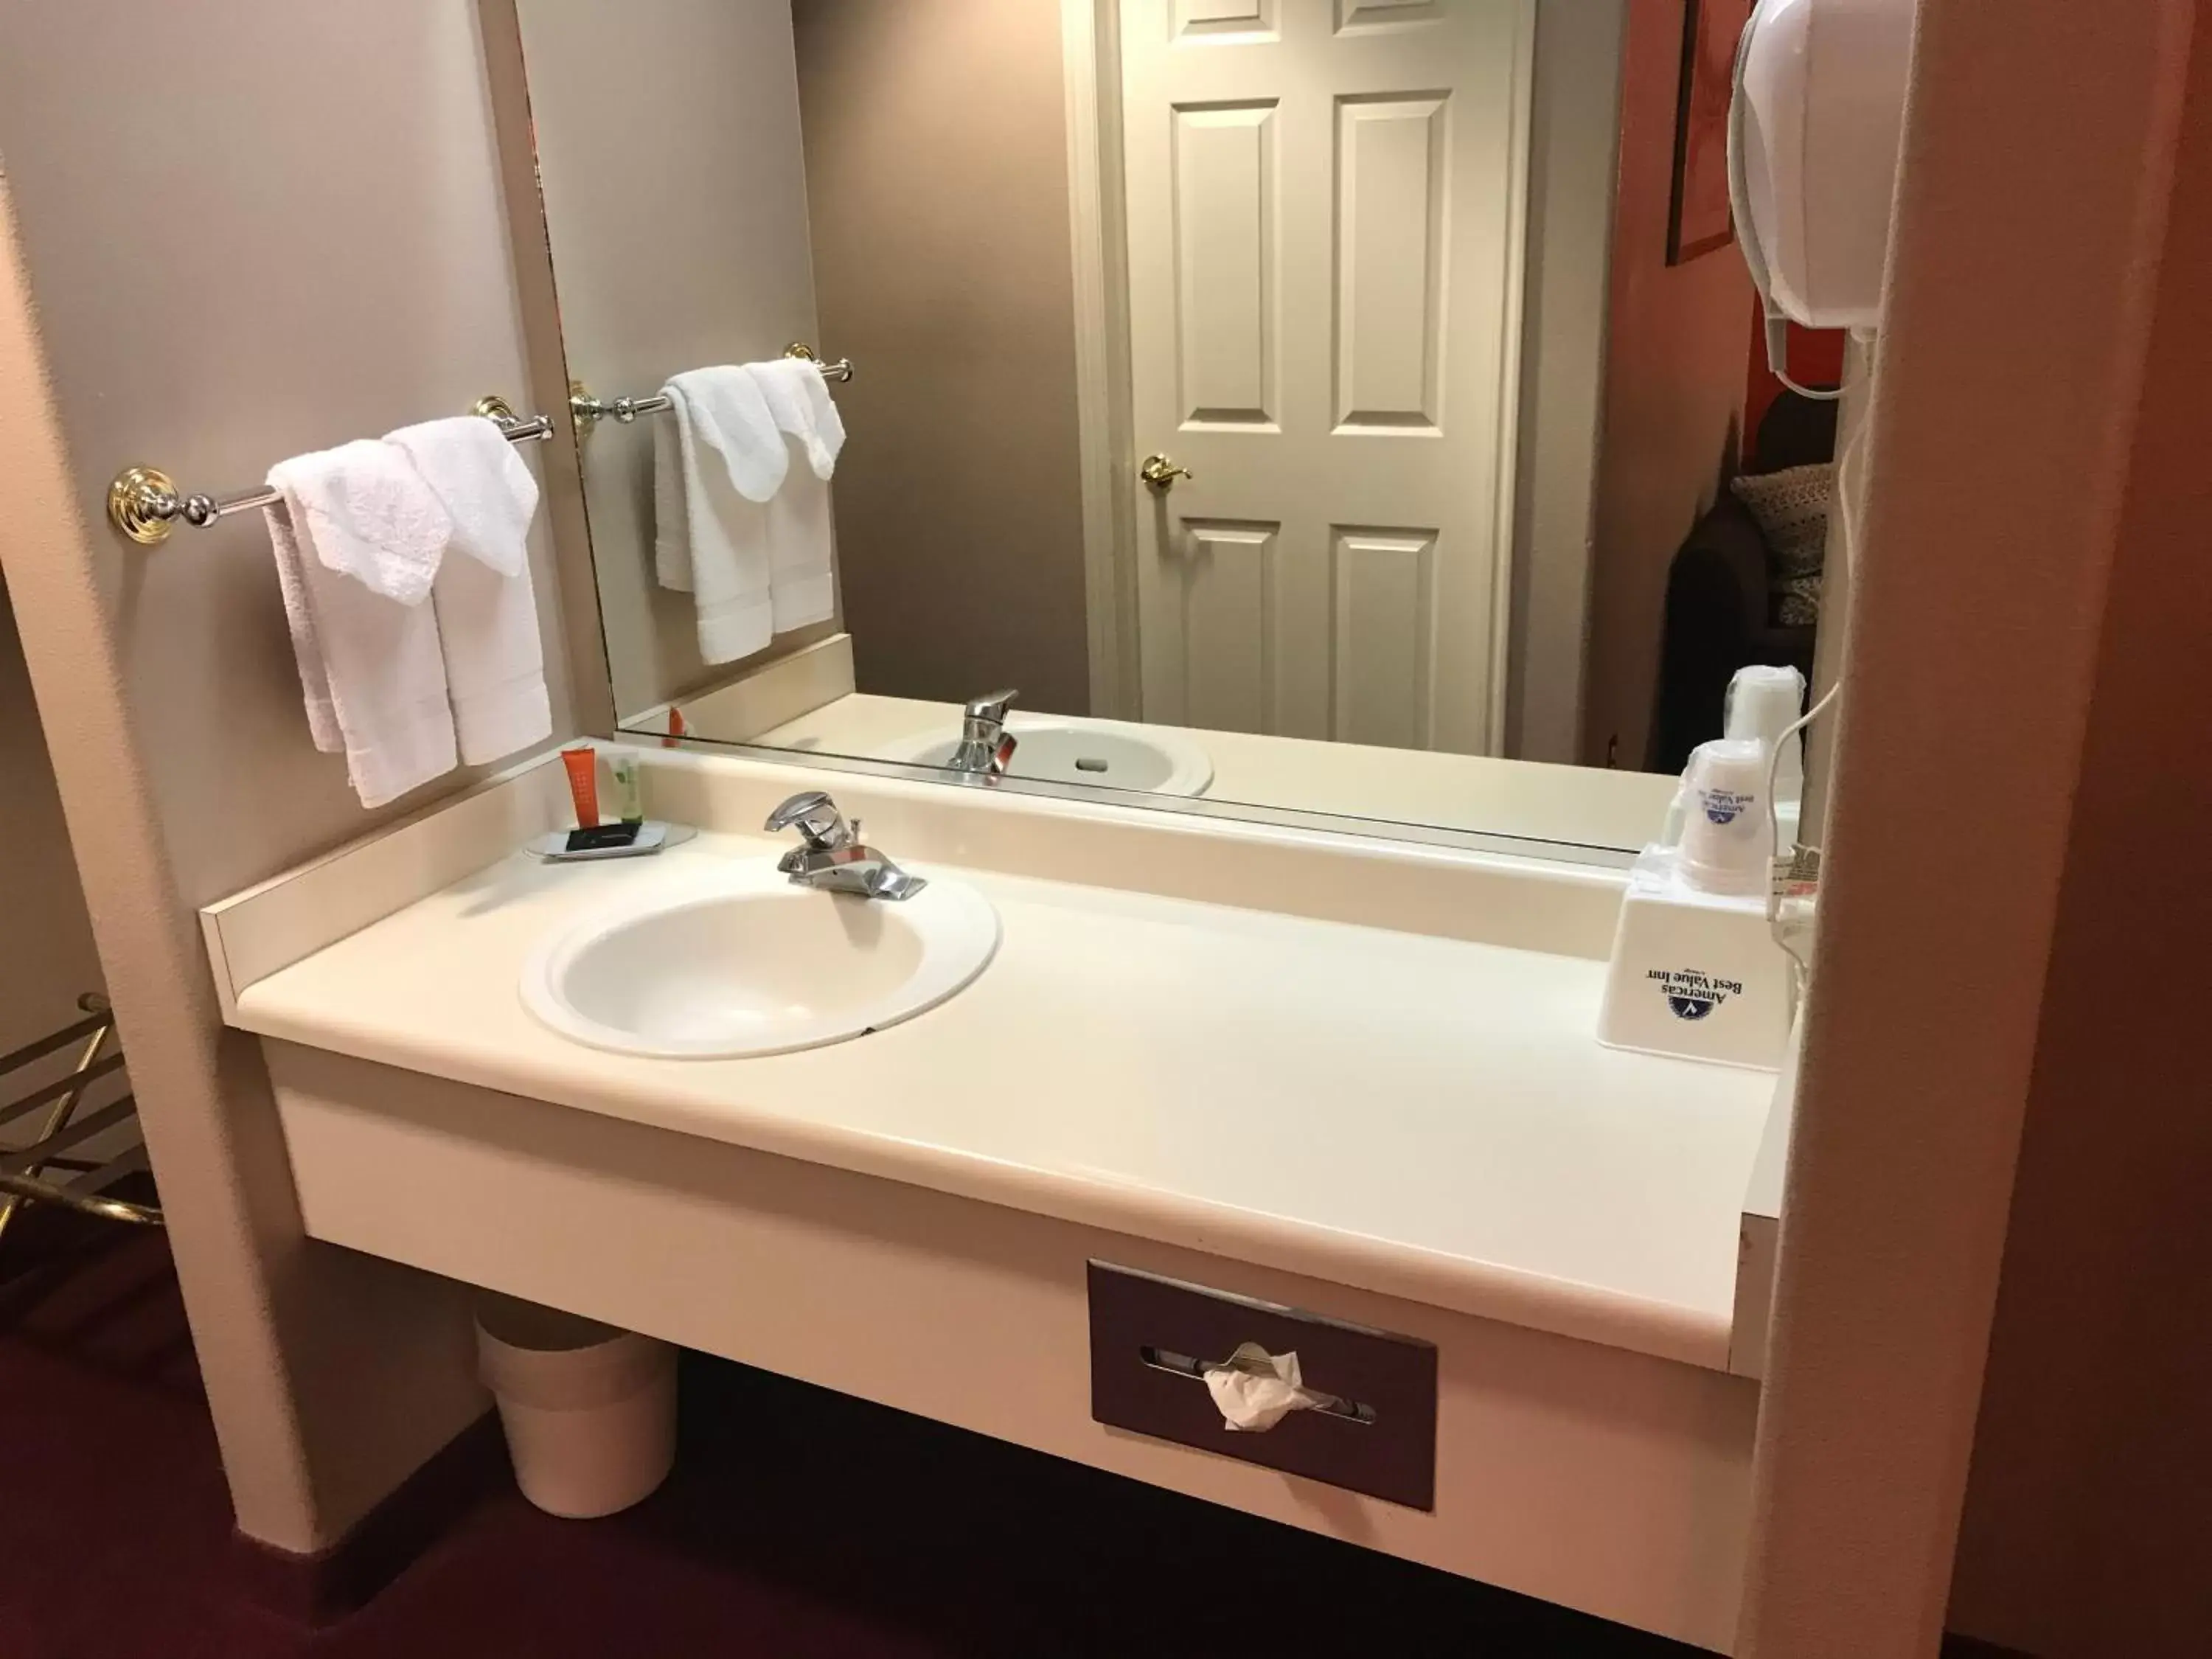 Area and facilities, Bathroom in Americas Best Value Inn Cedar City